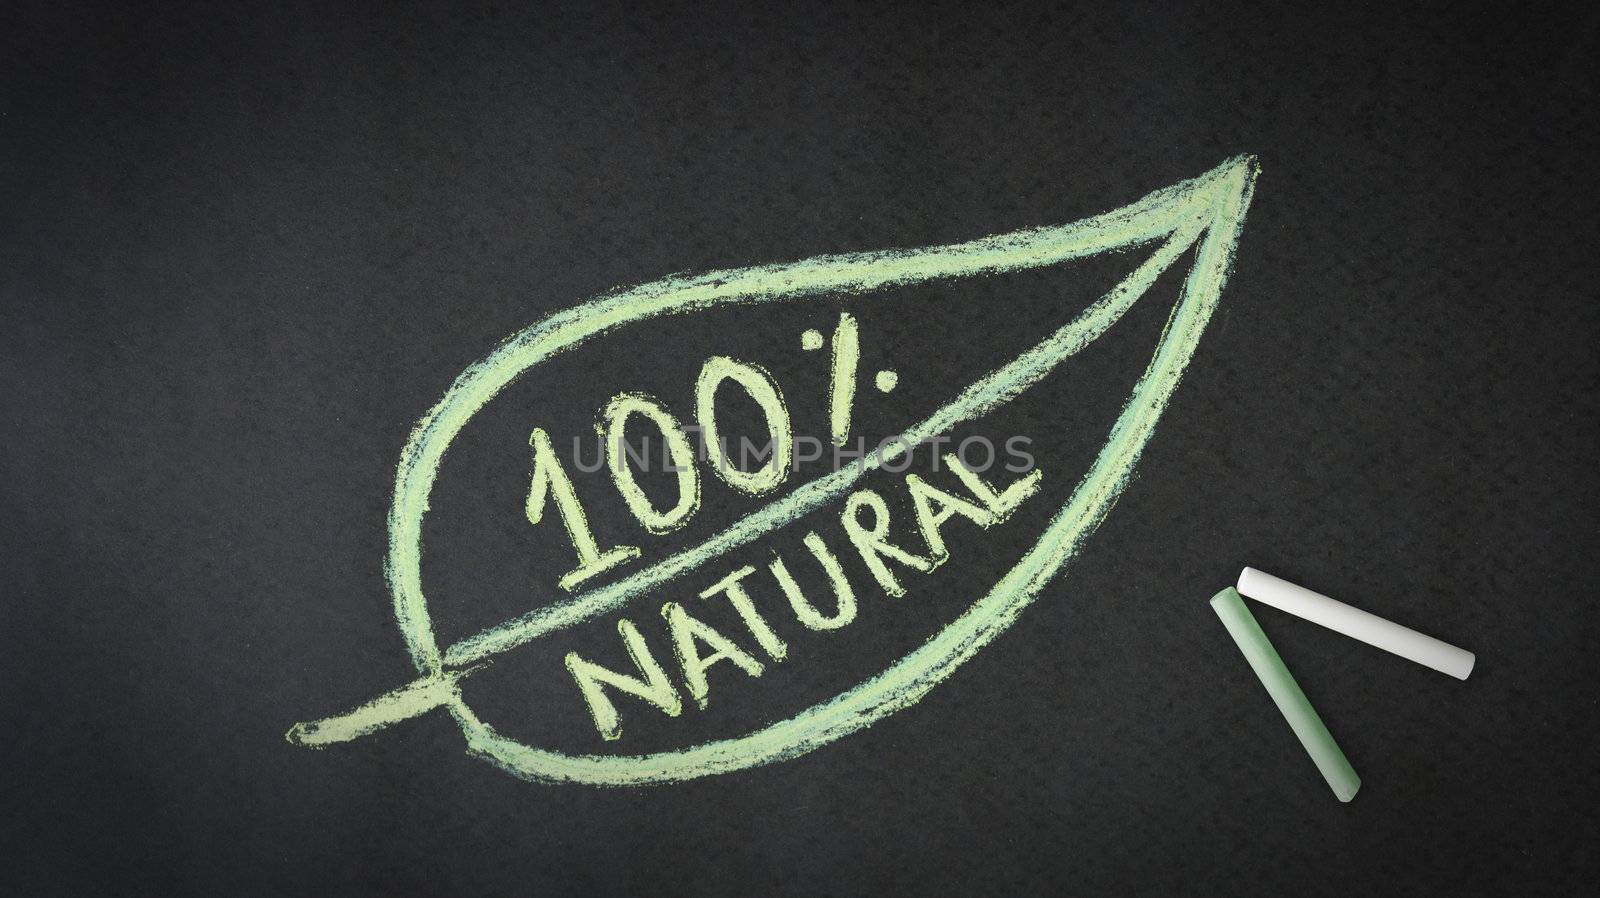 100 percent natural chalk illustration on black background.